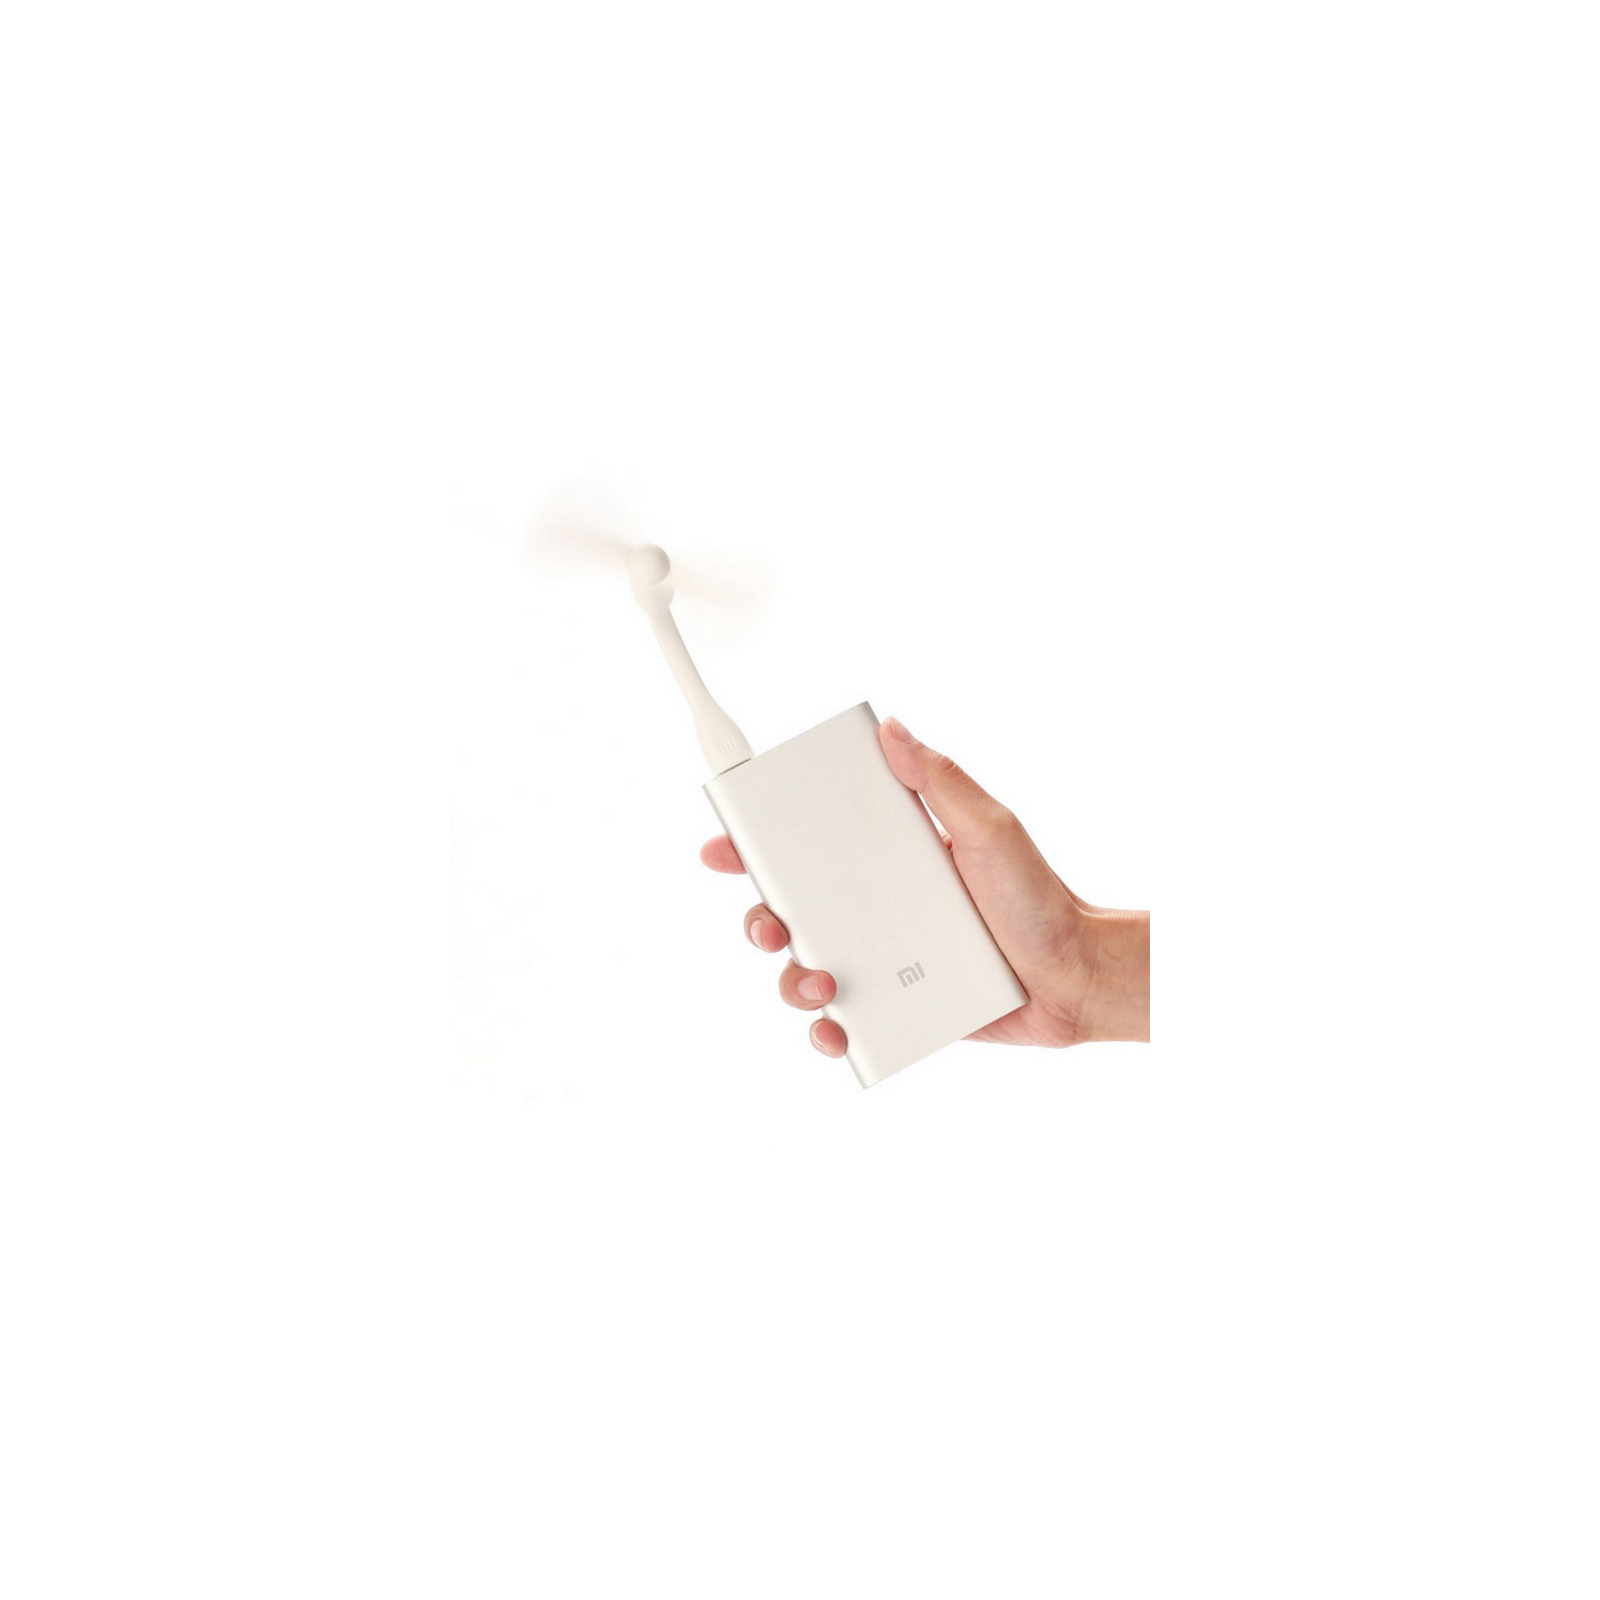 USB вентилятор Xiaomi Mi portable Fan White (Fan White) зображення 3